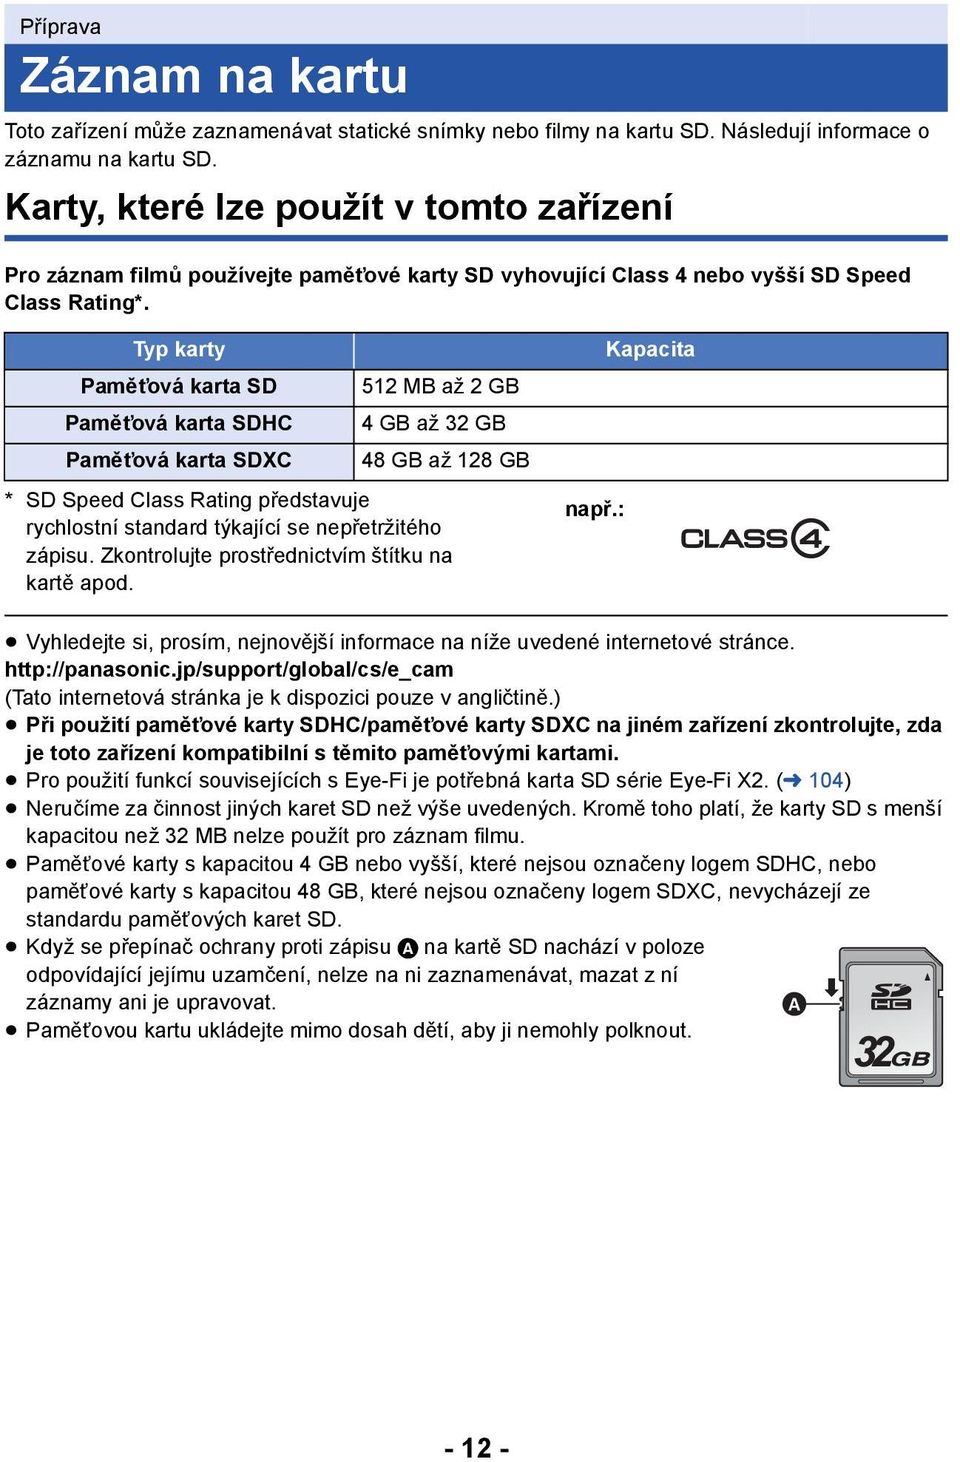 Typ karty Paměťová karta SD Paměťová karta SDHC Paměťová karta SDXC 512 MB až 2 GB 4GB až 32GB 48 GB až 128 GB * SD Speed Class Rating představuje rychlostní standard týkající se nepřetržitého zápisu.